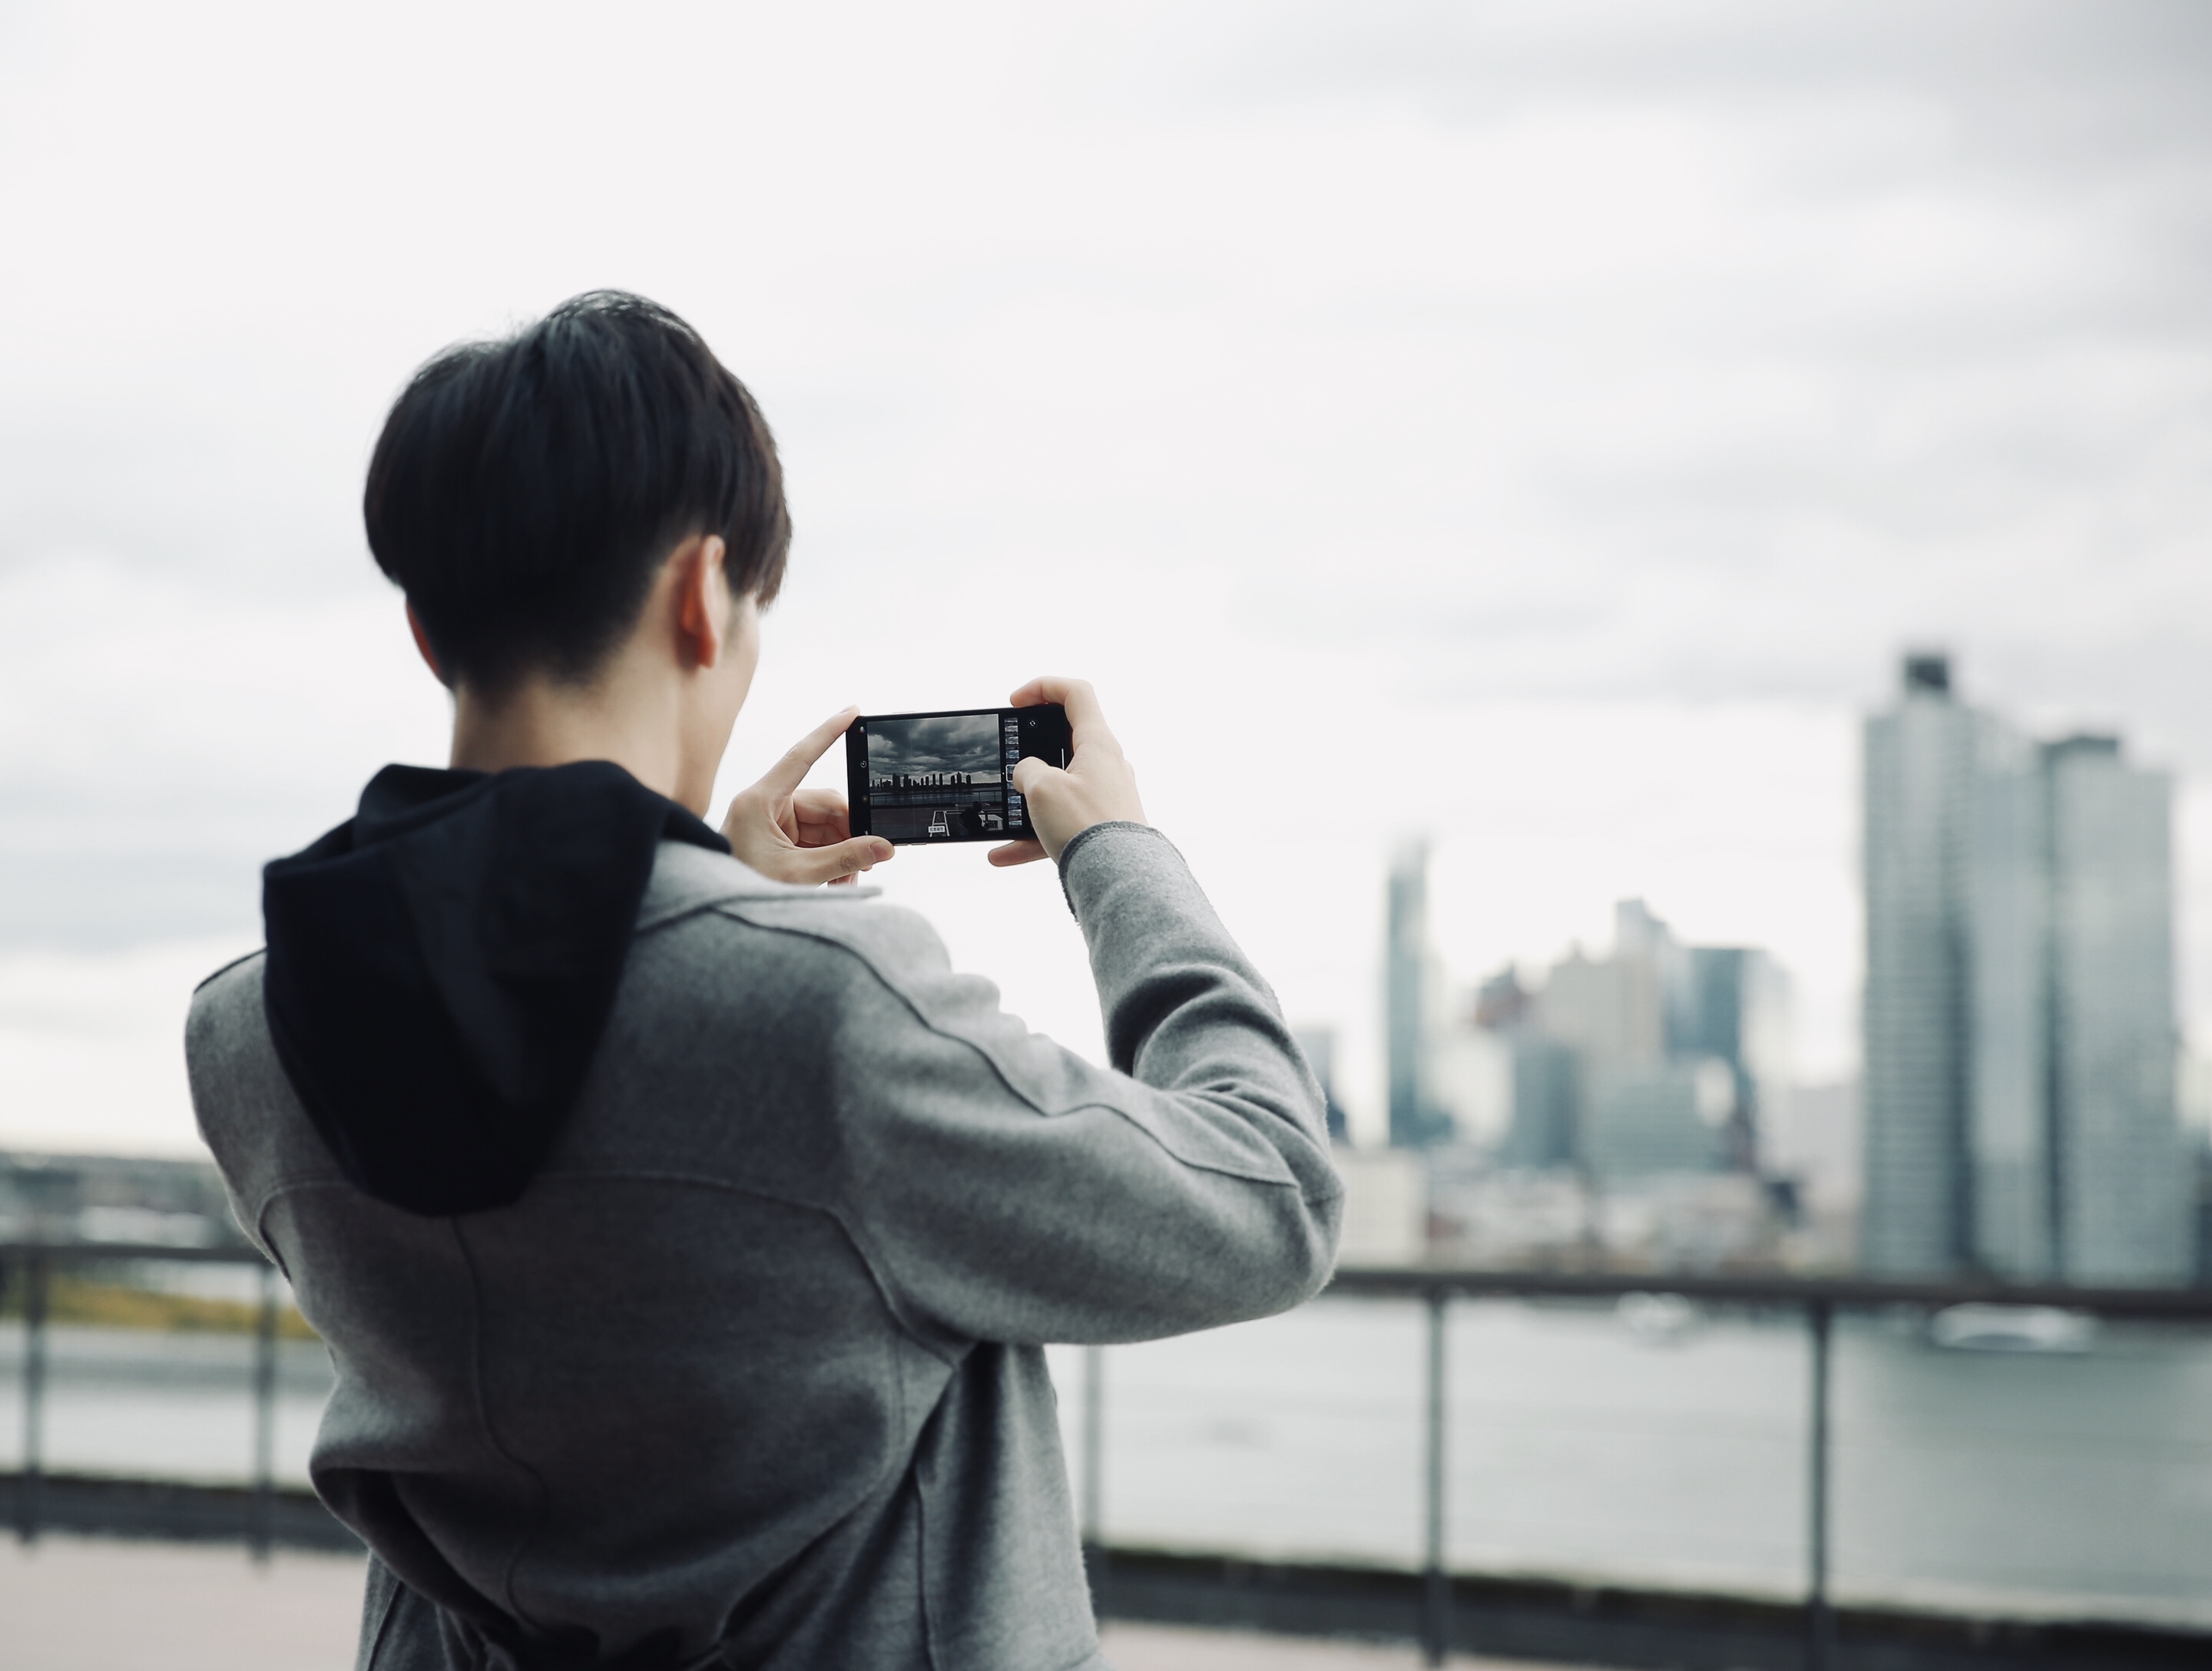 拿着手机拍世界的王嘉也算得上是一名努力的文艺摄影师